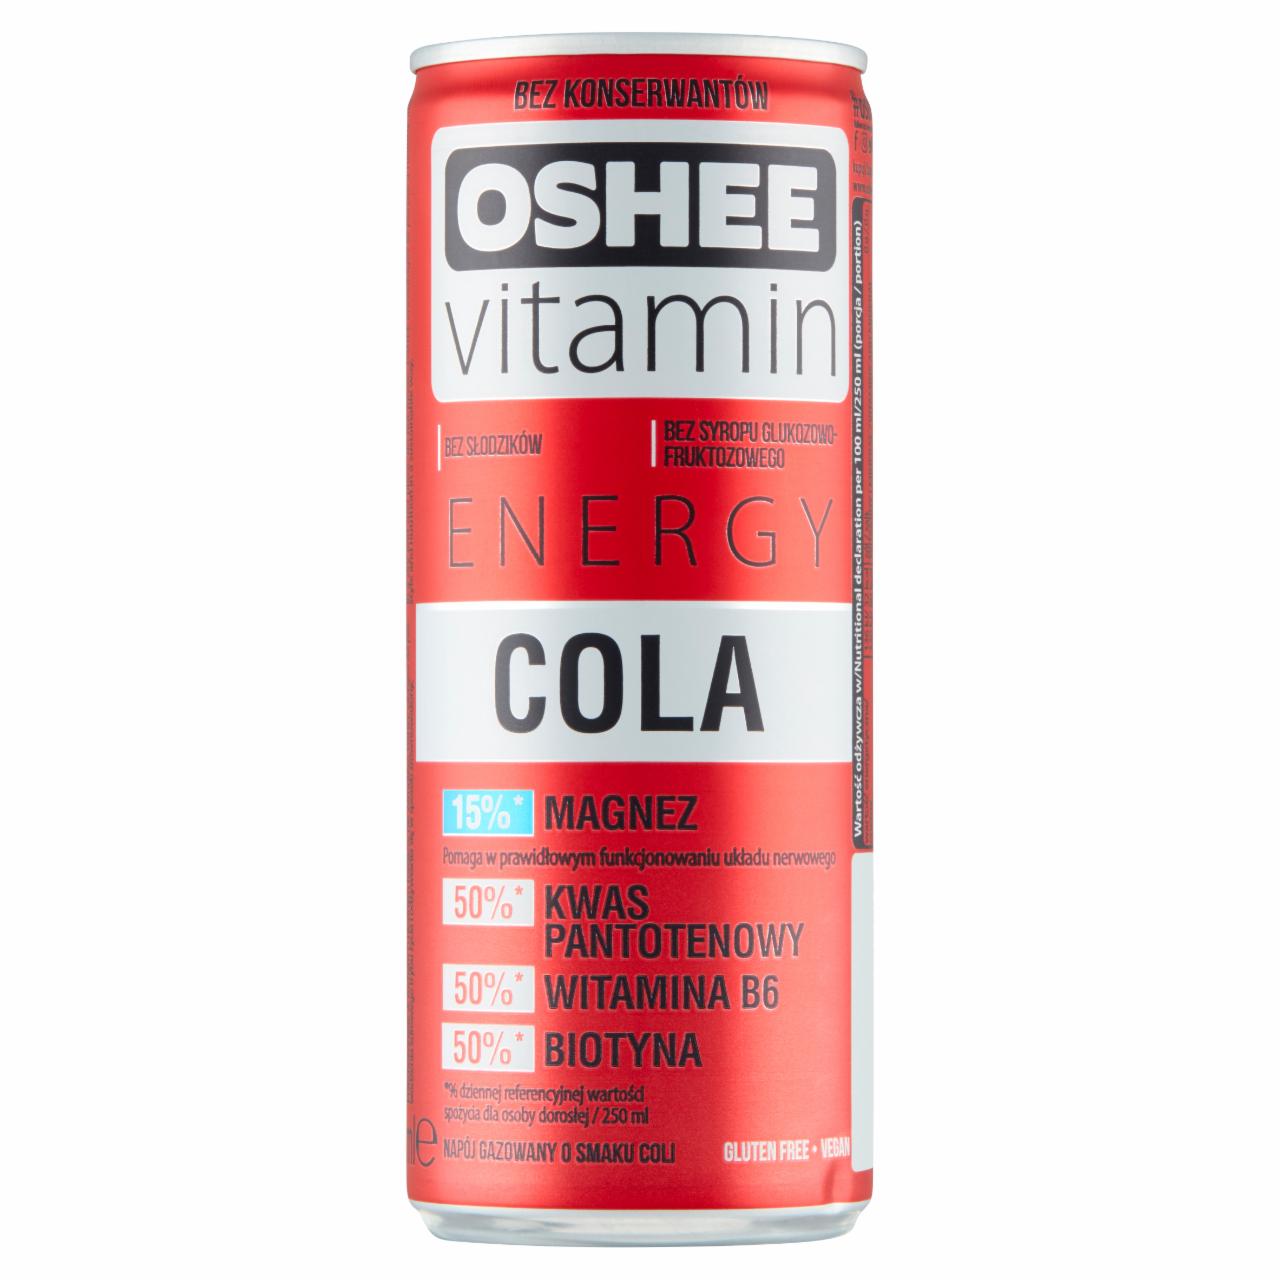 Zdjęcia - Oshee Energy Cola Napój gazowany o smaku coli 250 ml